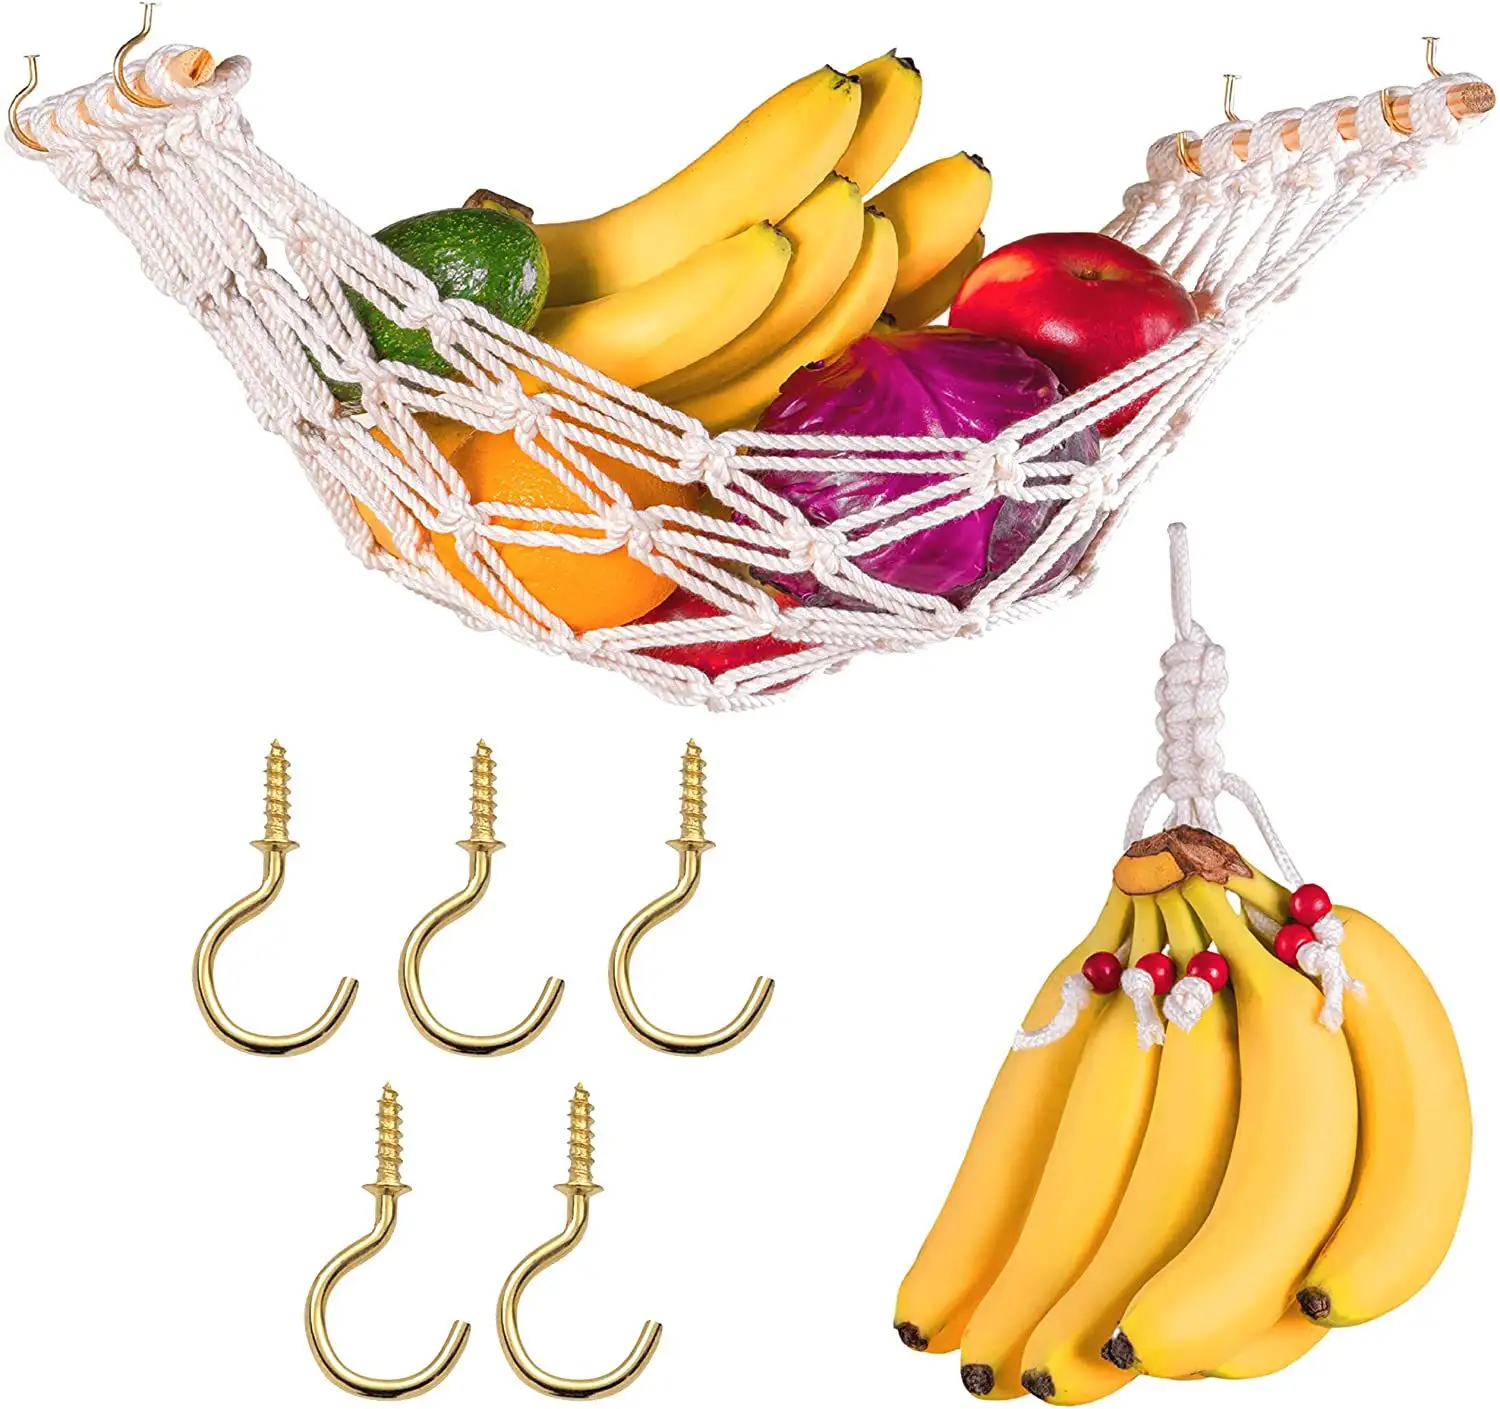 Vente chaude Cuisine Stockage Macramé Coton Fruits Banane Légumes Hamac Sous L'armoire Suspendu Panier De Fruits Titulaire